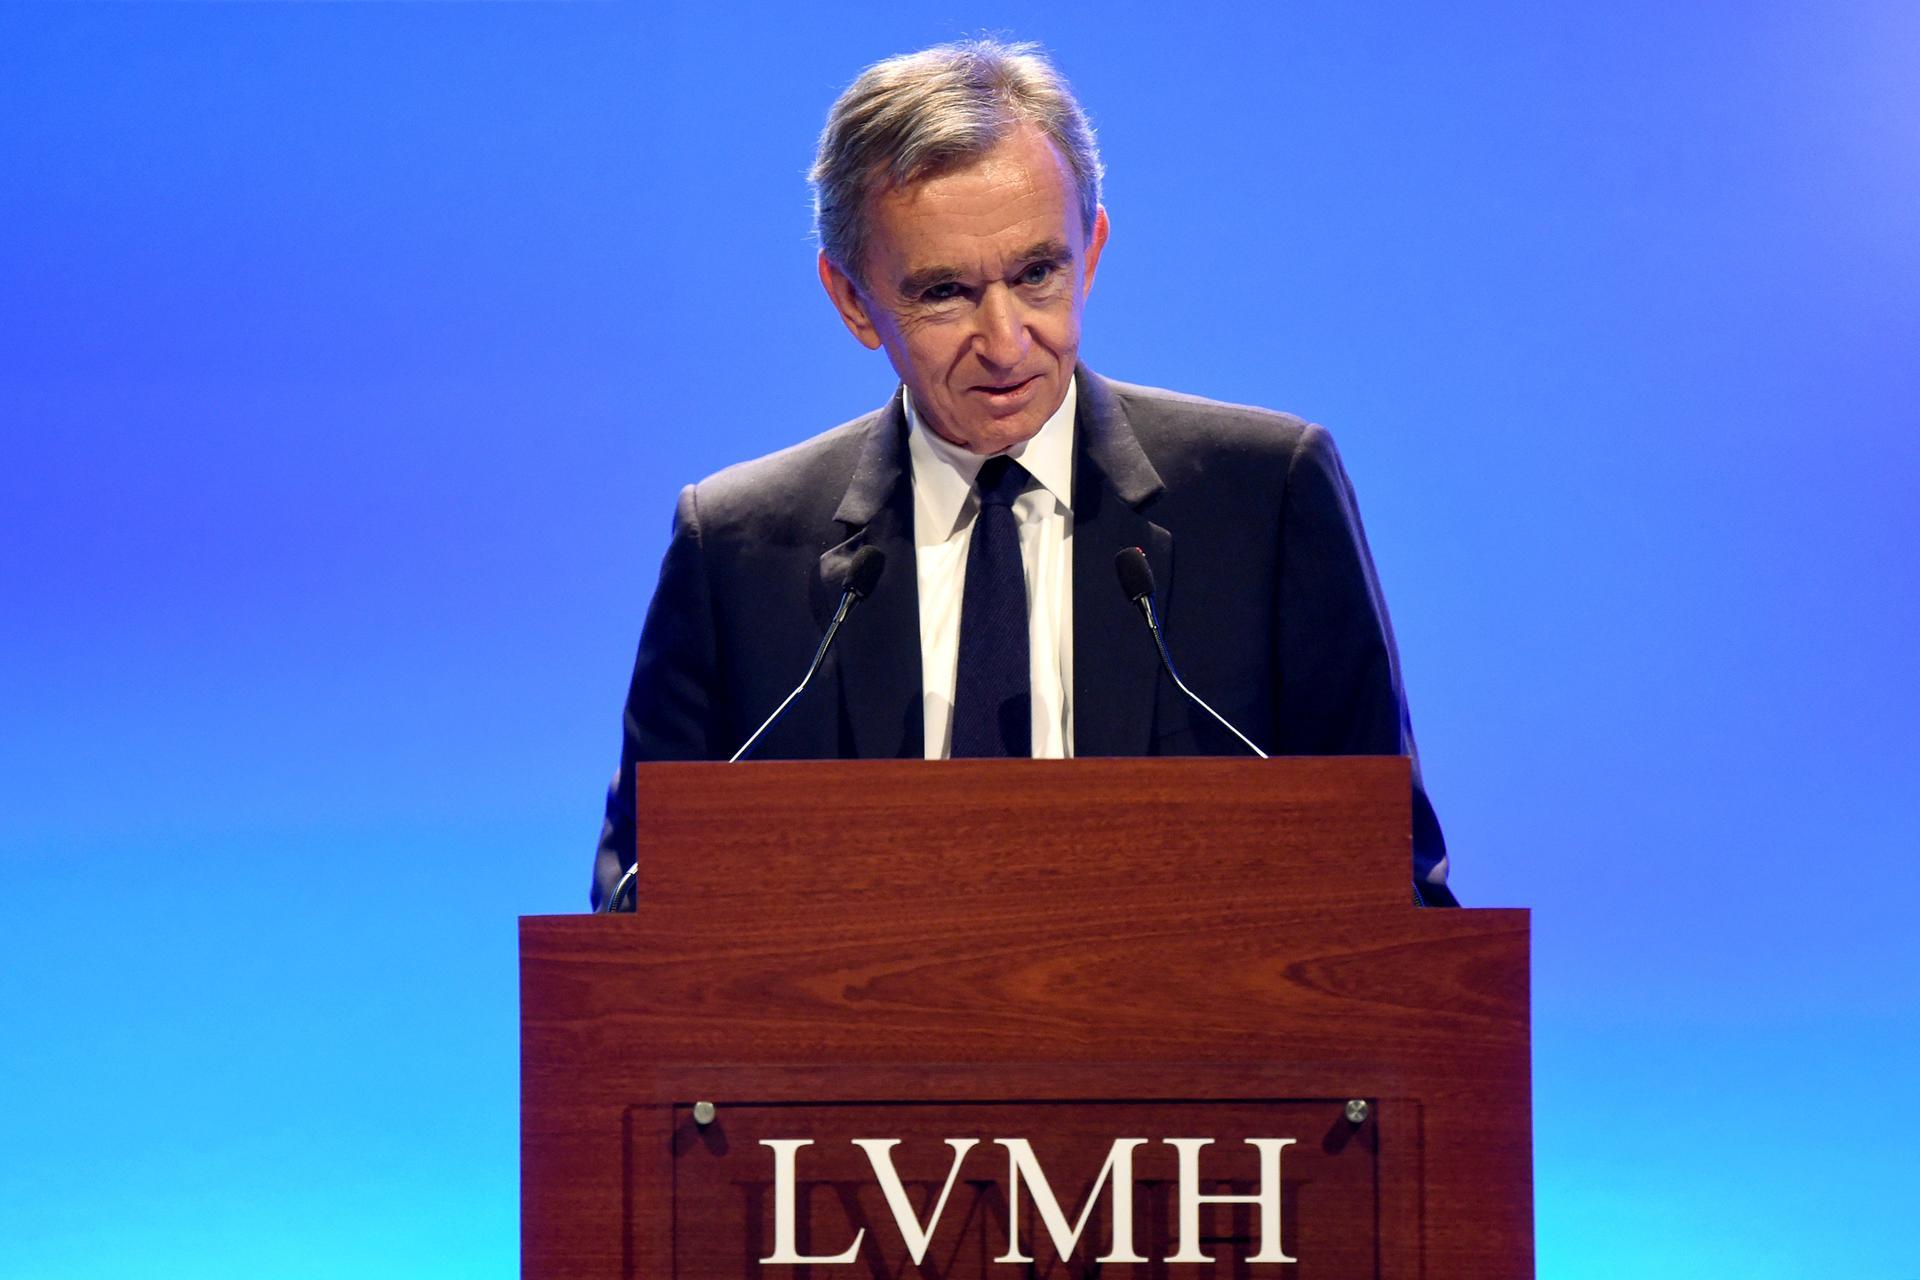 LVMH CEO Bernard Arnault's wealth surpasses $200 billion